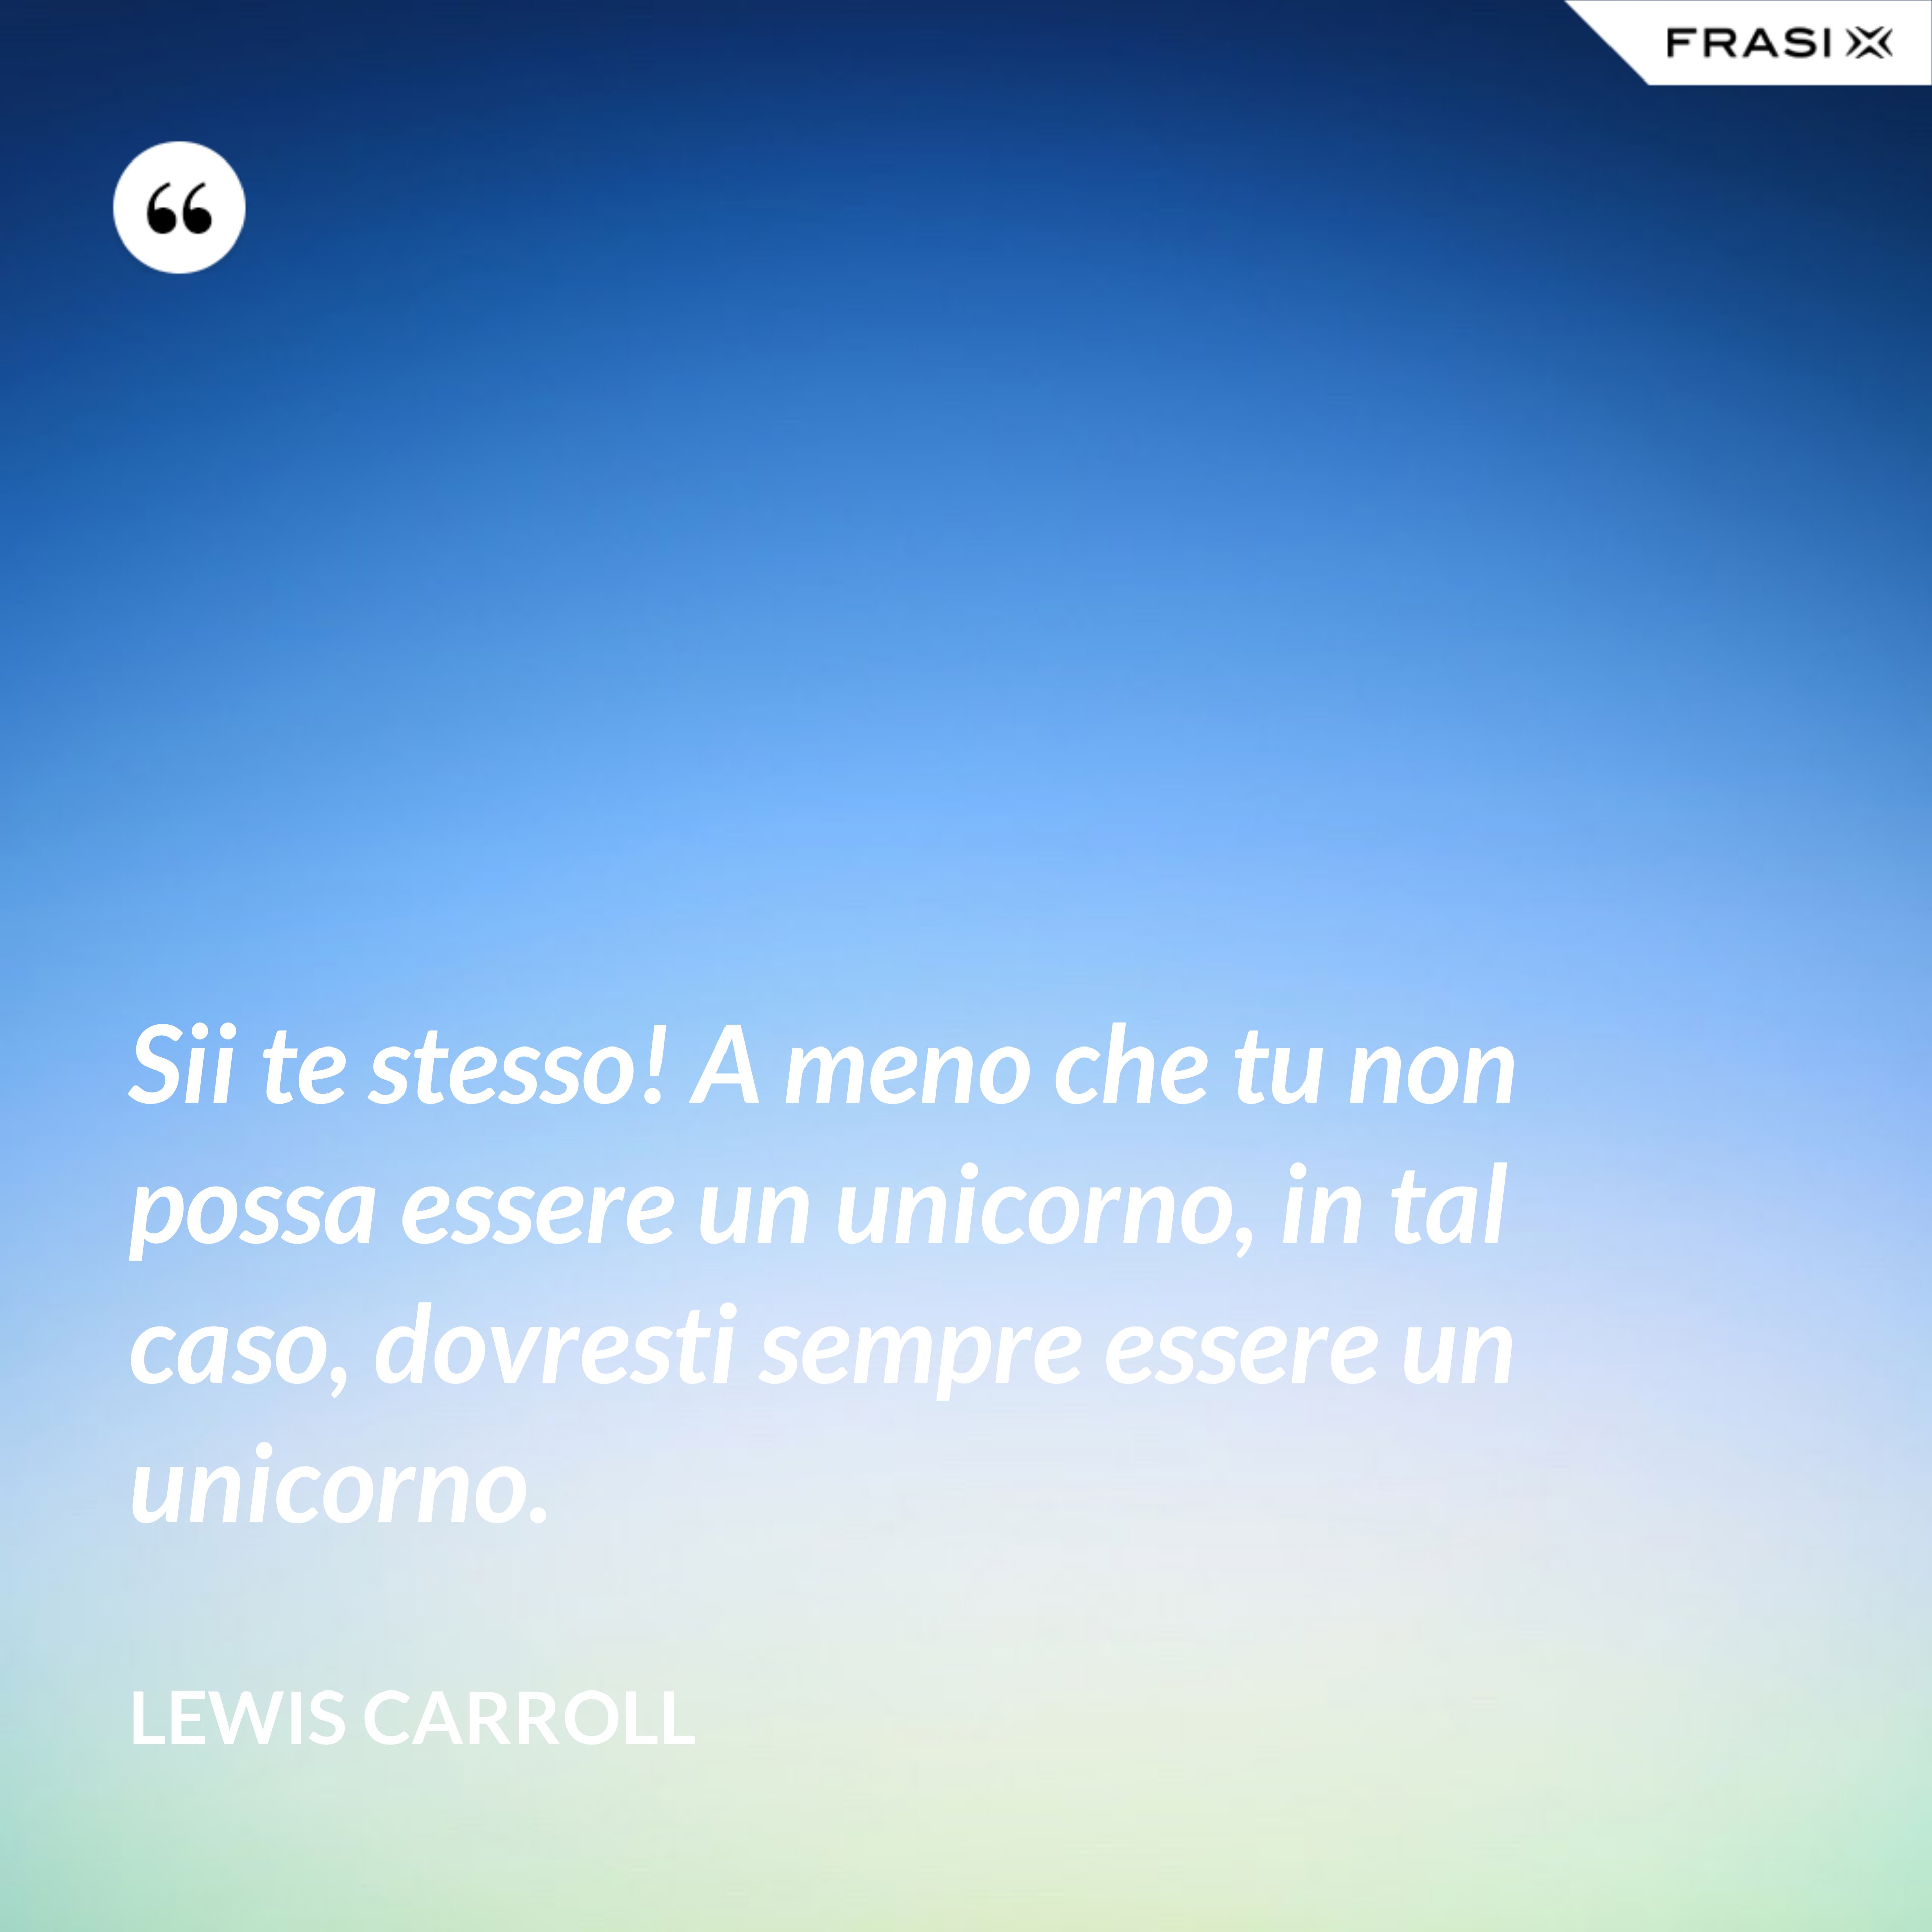 Sii te stesso! A meno che tu non possa essere un unicorno, in tal caso, dovresti sempre essere un unicorno. - Lewis Carroll